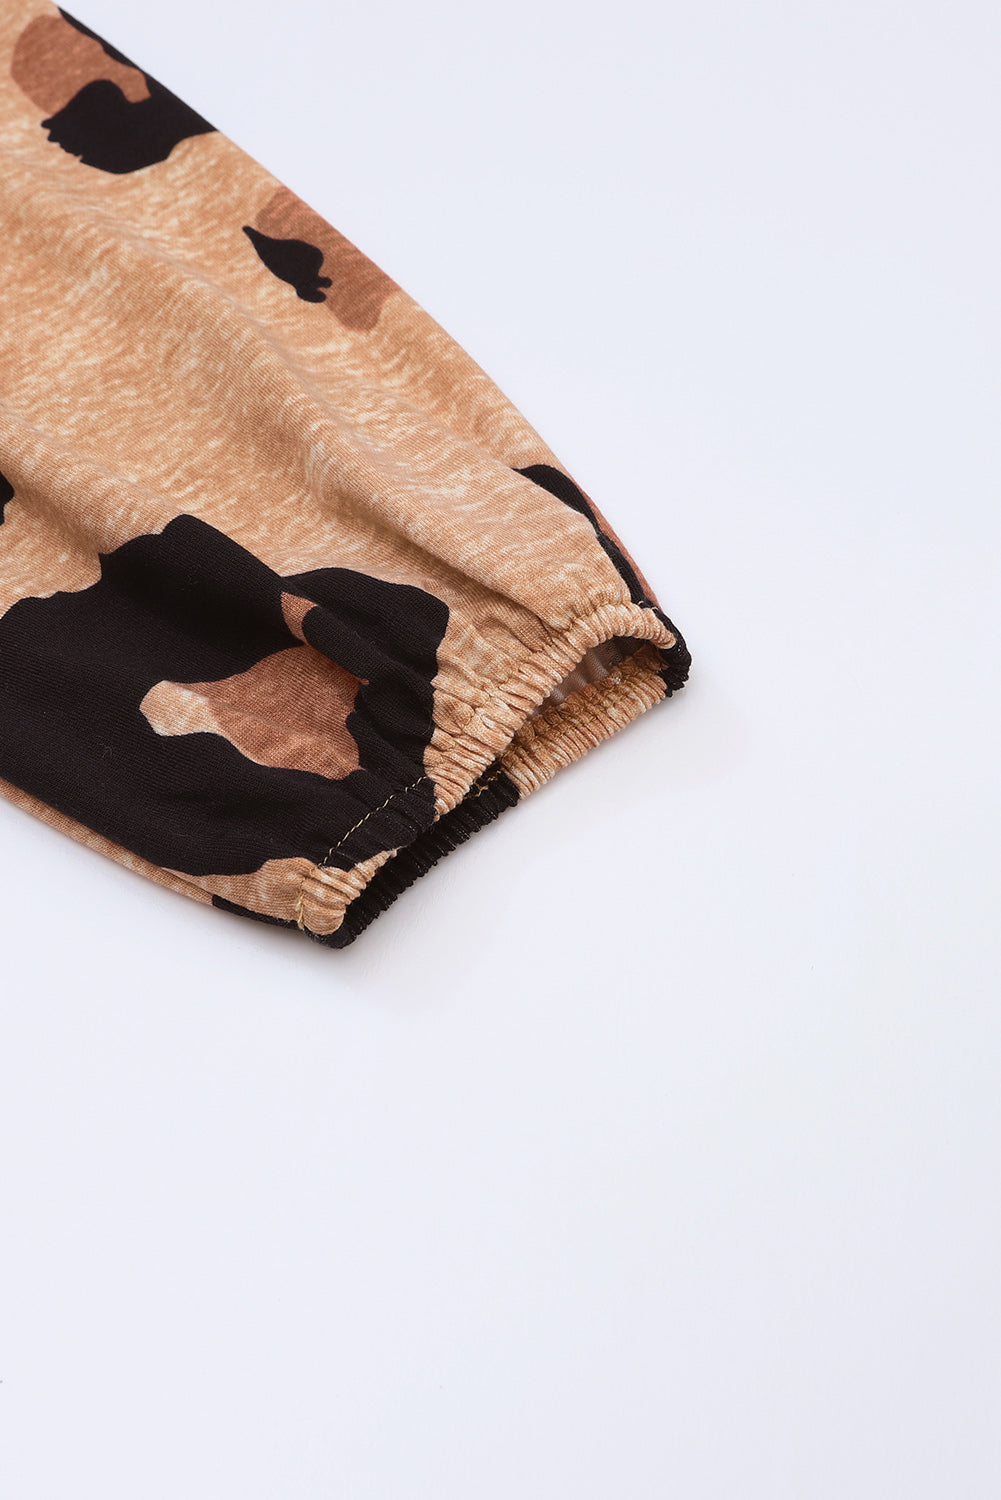 Robe en tricot ample à manches bouffantes et boutonnée sur le devant à imprimé léopard